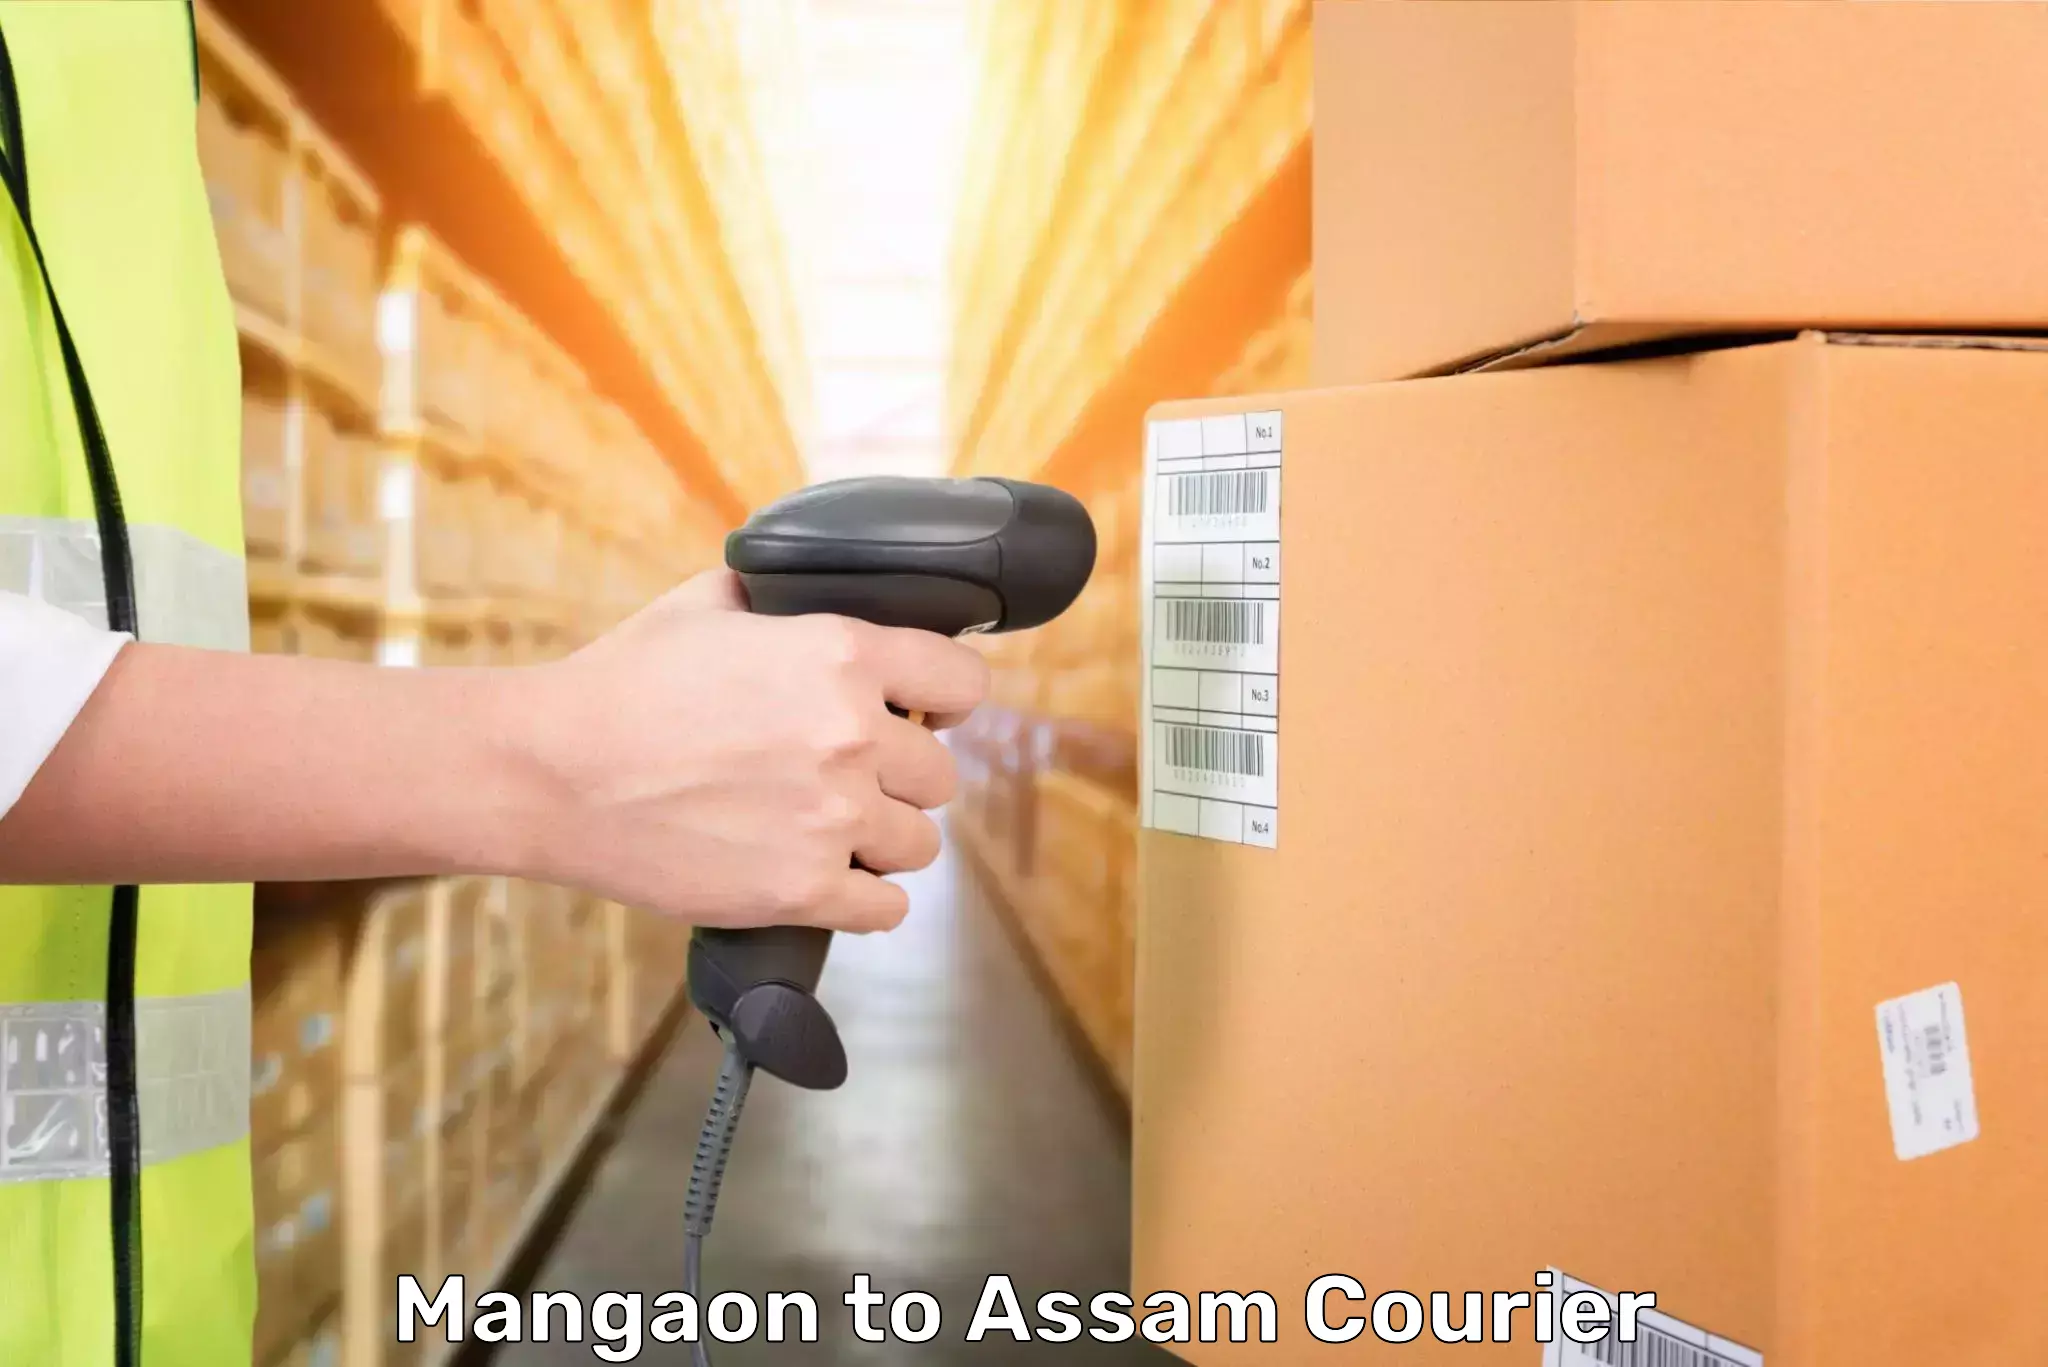 Baggage transport scheduler Mangaon to Assam